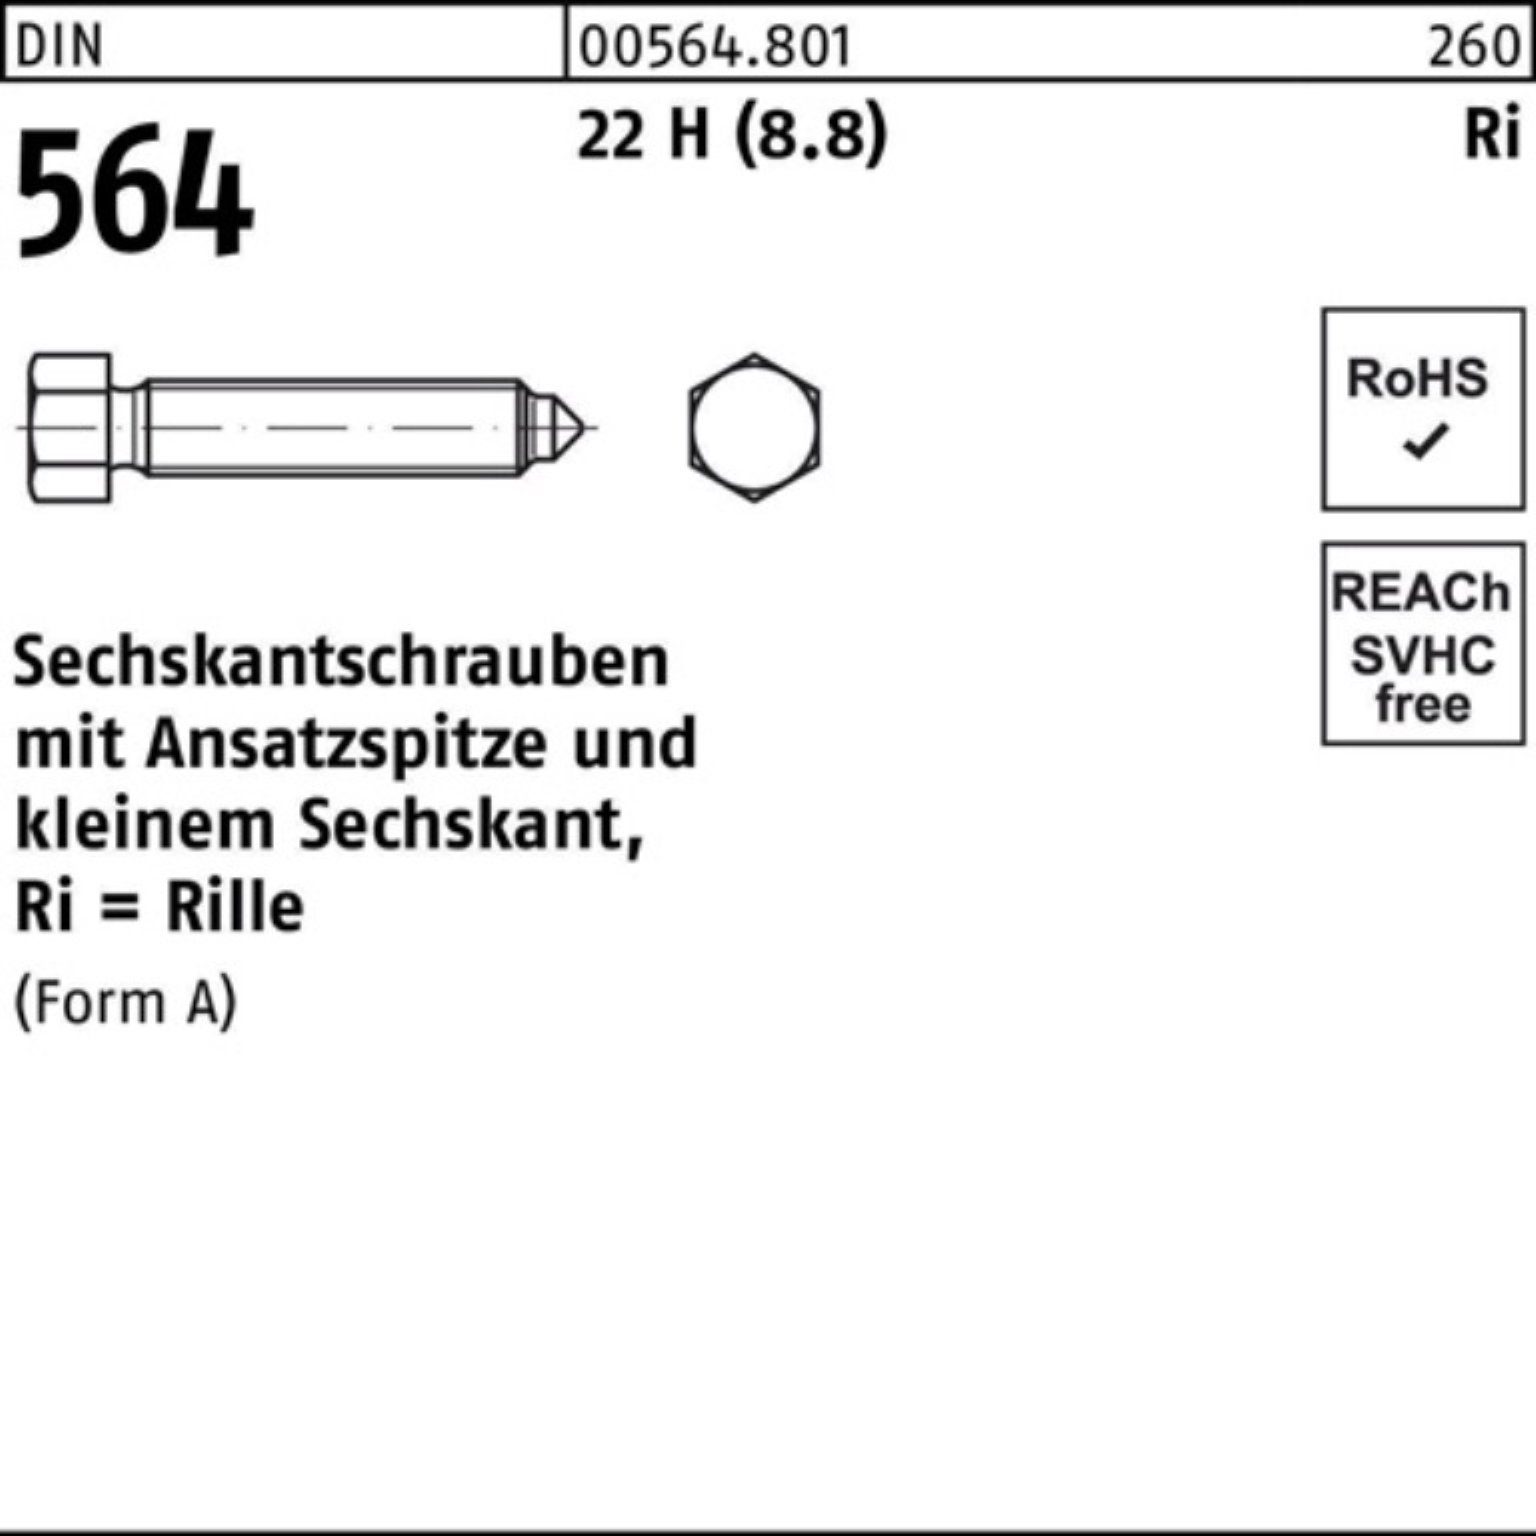 Sechskantschraube AM Reyher 10x Sechskantschraube H 100er 35 (8.8) DIN 564 Pack 22 Ansatzspitze